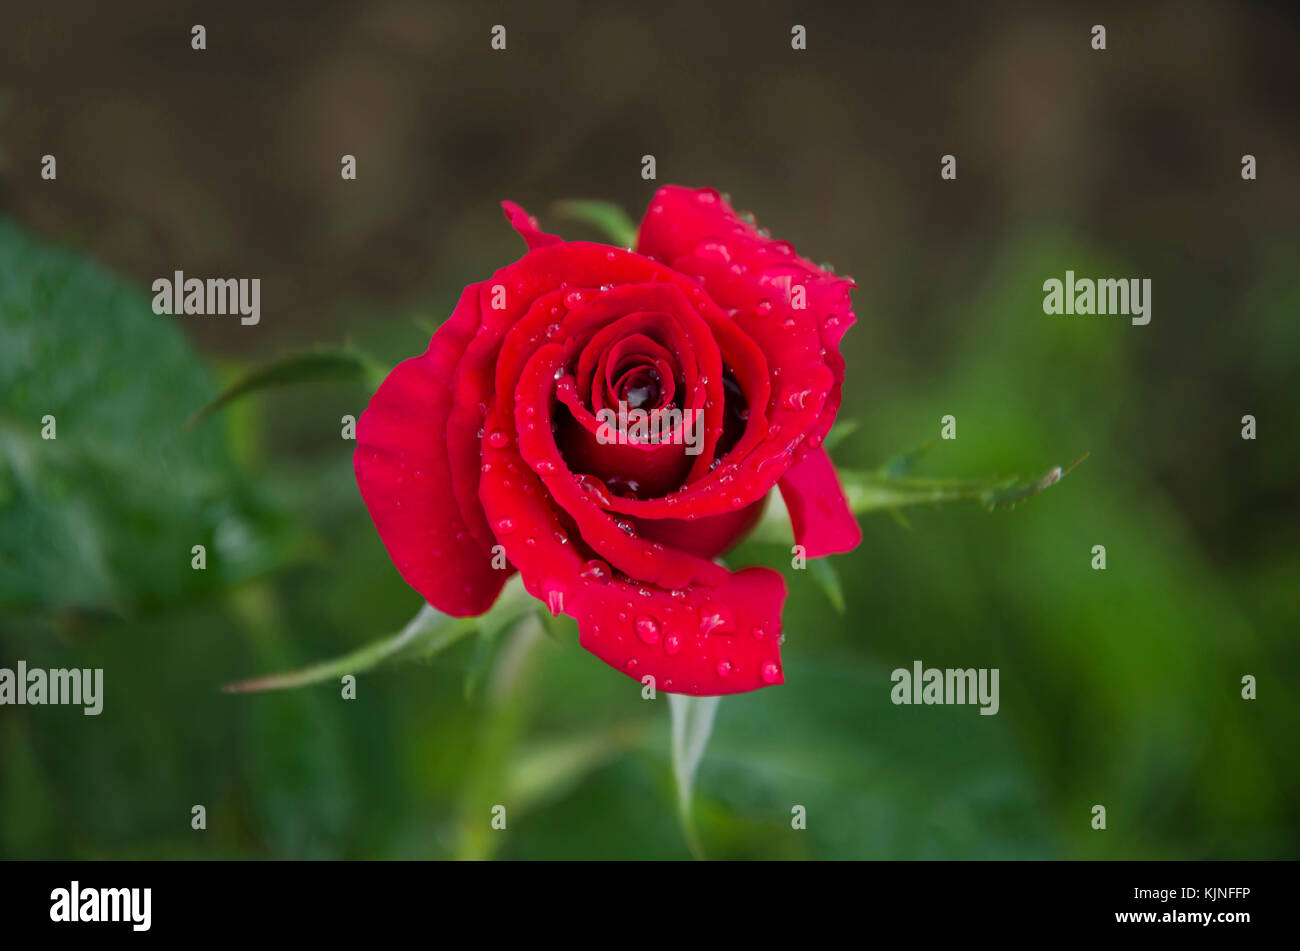 In estate in giardino una bella rosa rossa fiore con un profumo gradevole, con goccioline di acqua dopo una pioggia Foto Stock